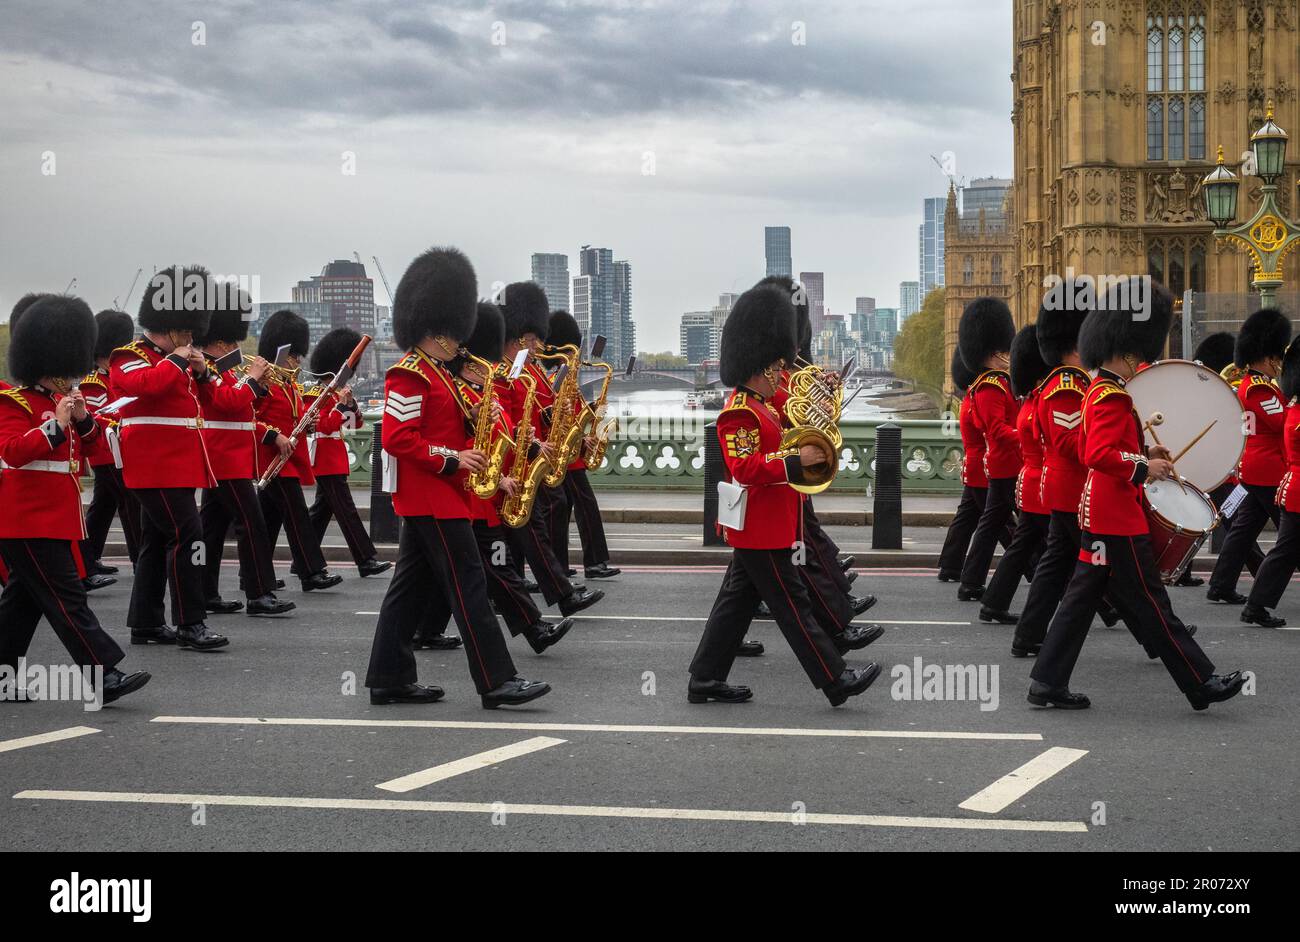 Mentre marciano in uniforme cerimoniale attraverso il Westminster Bridge, una band appartenente alla Grenadier Guards dell'Esercito britannico suona musica, mentre marciano Foto Stock